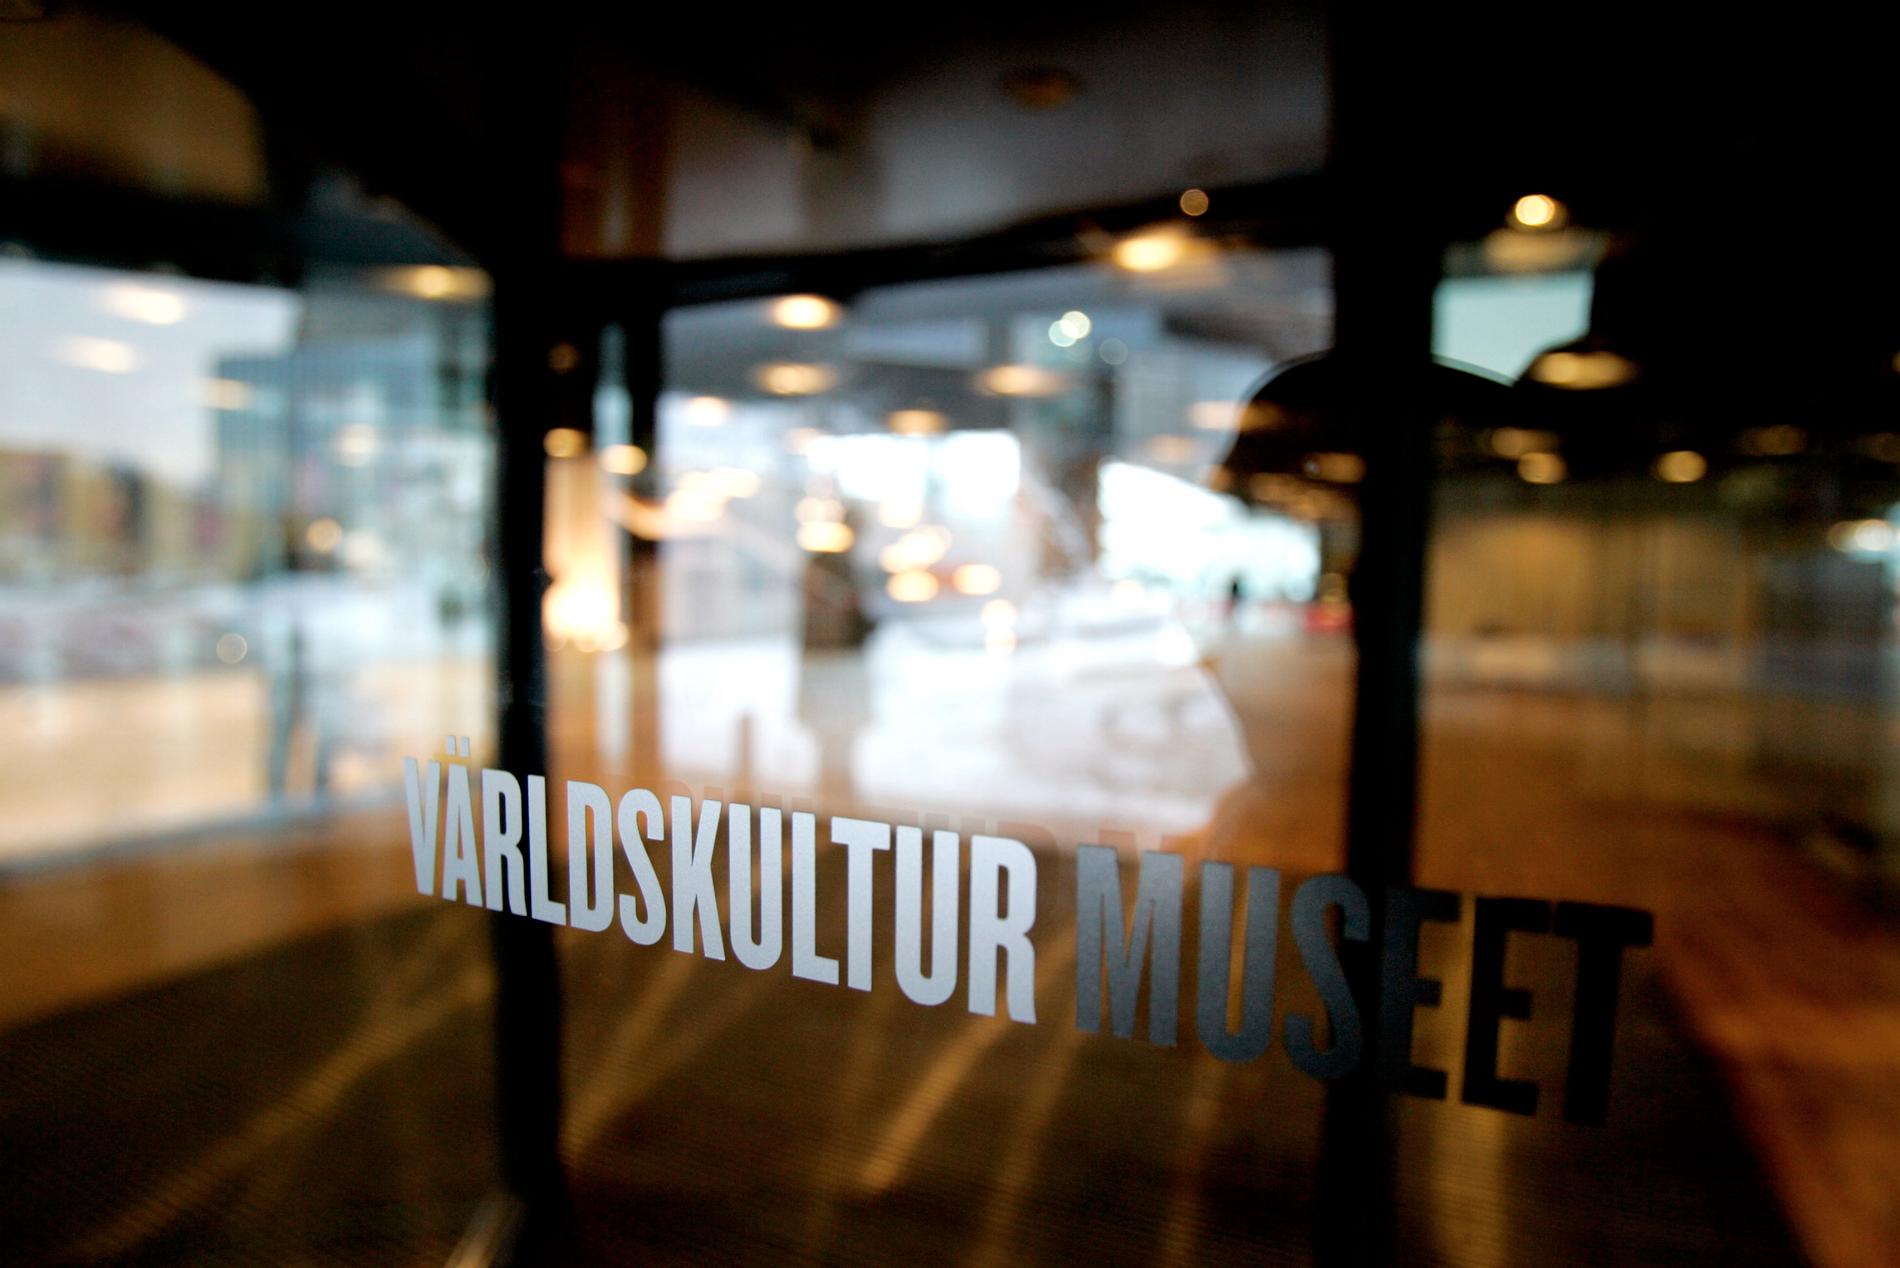 Världskulturmuseet i Göteborg öppnar nya utställningen "Existens" i veckan. Arkivbild.